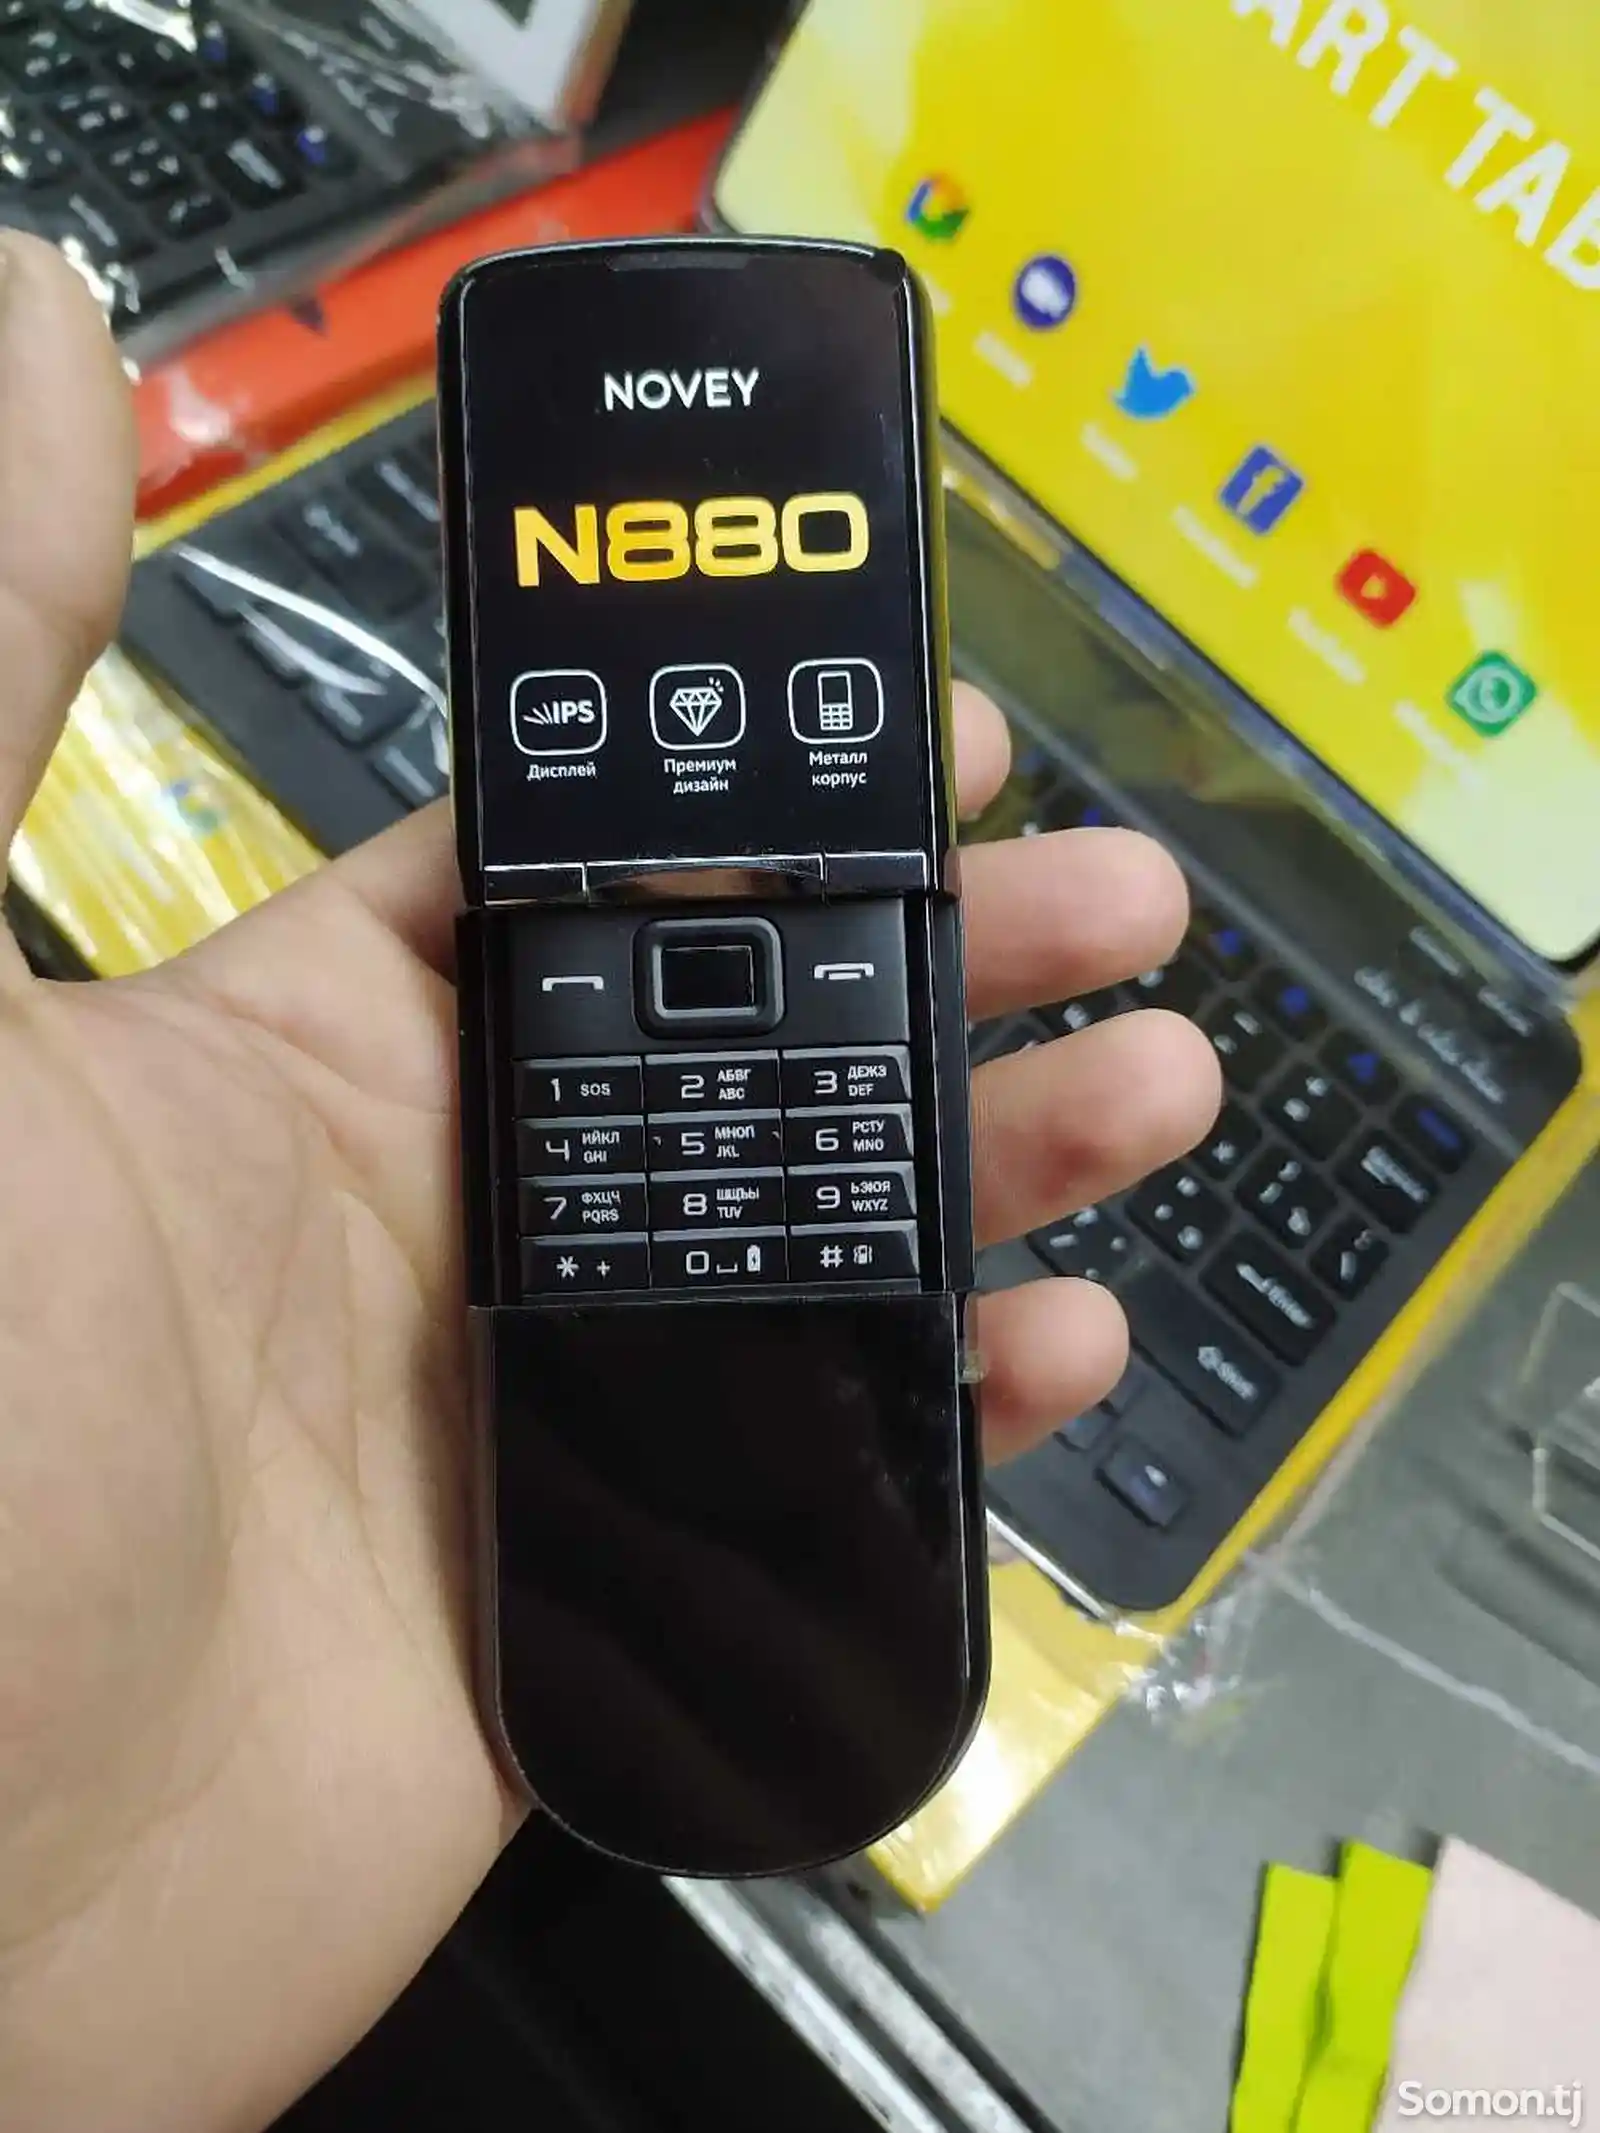 Novey N880-7